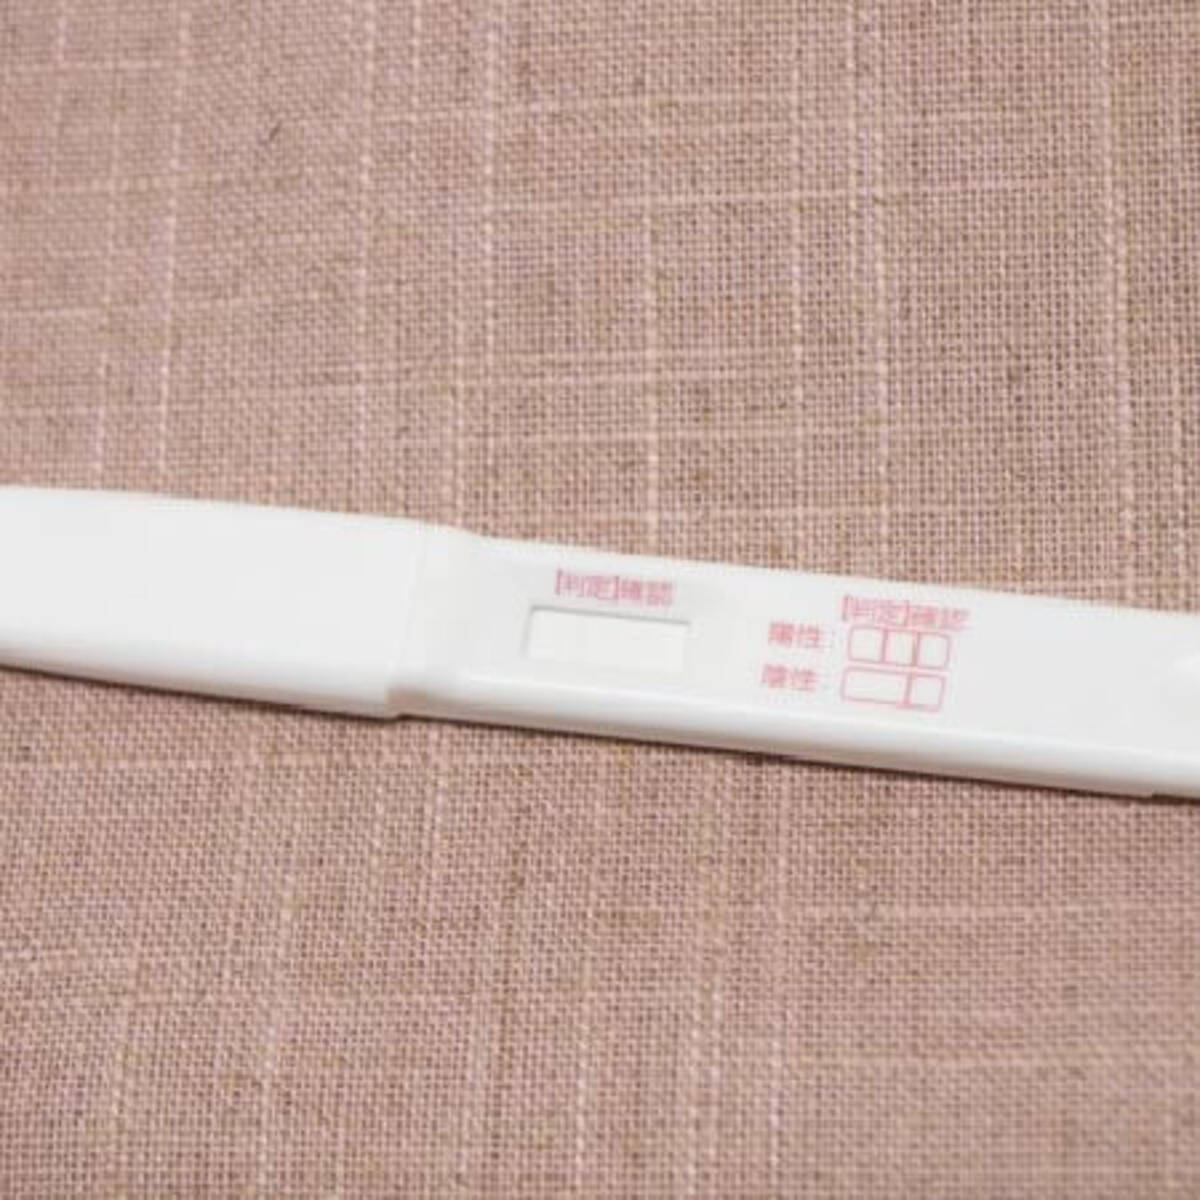 使用済みの 妊娠検査薬 が高く売れる 闇売買の裏で横行する 中絶詐欺 年9月21日 エキサイトニュース